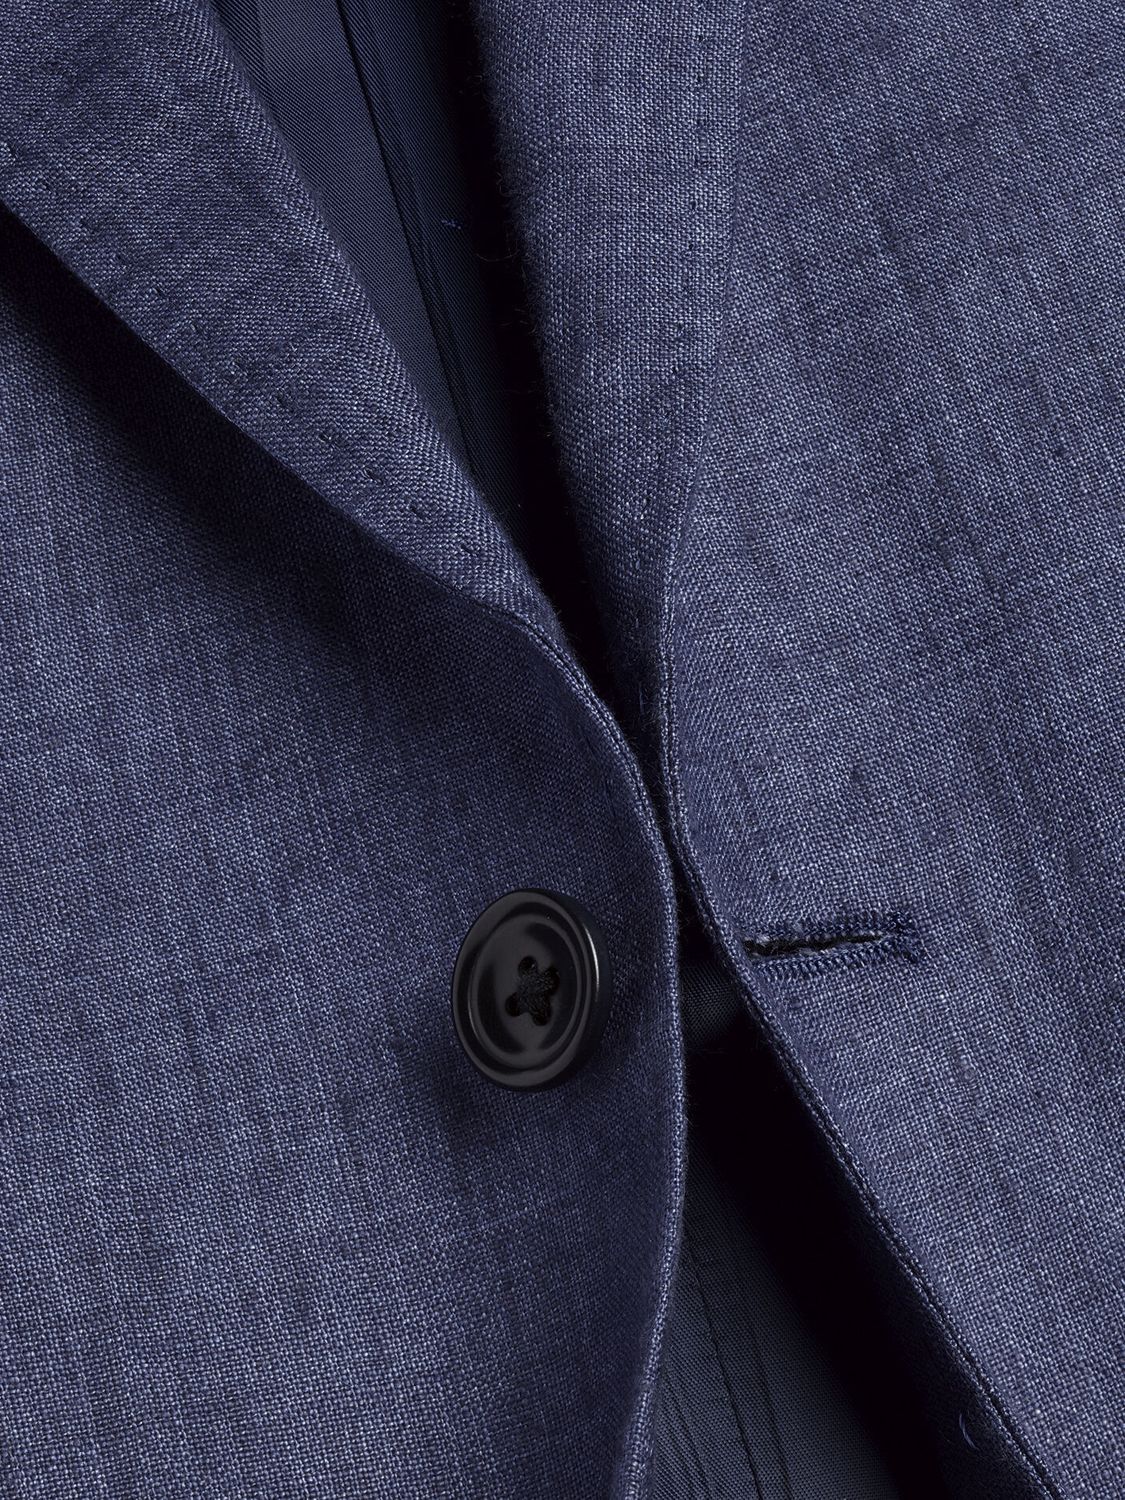 Charles Tyrwhitt Slim Fit Linen Blazer, Ocean Blue at John Lewis & Partners